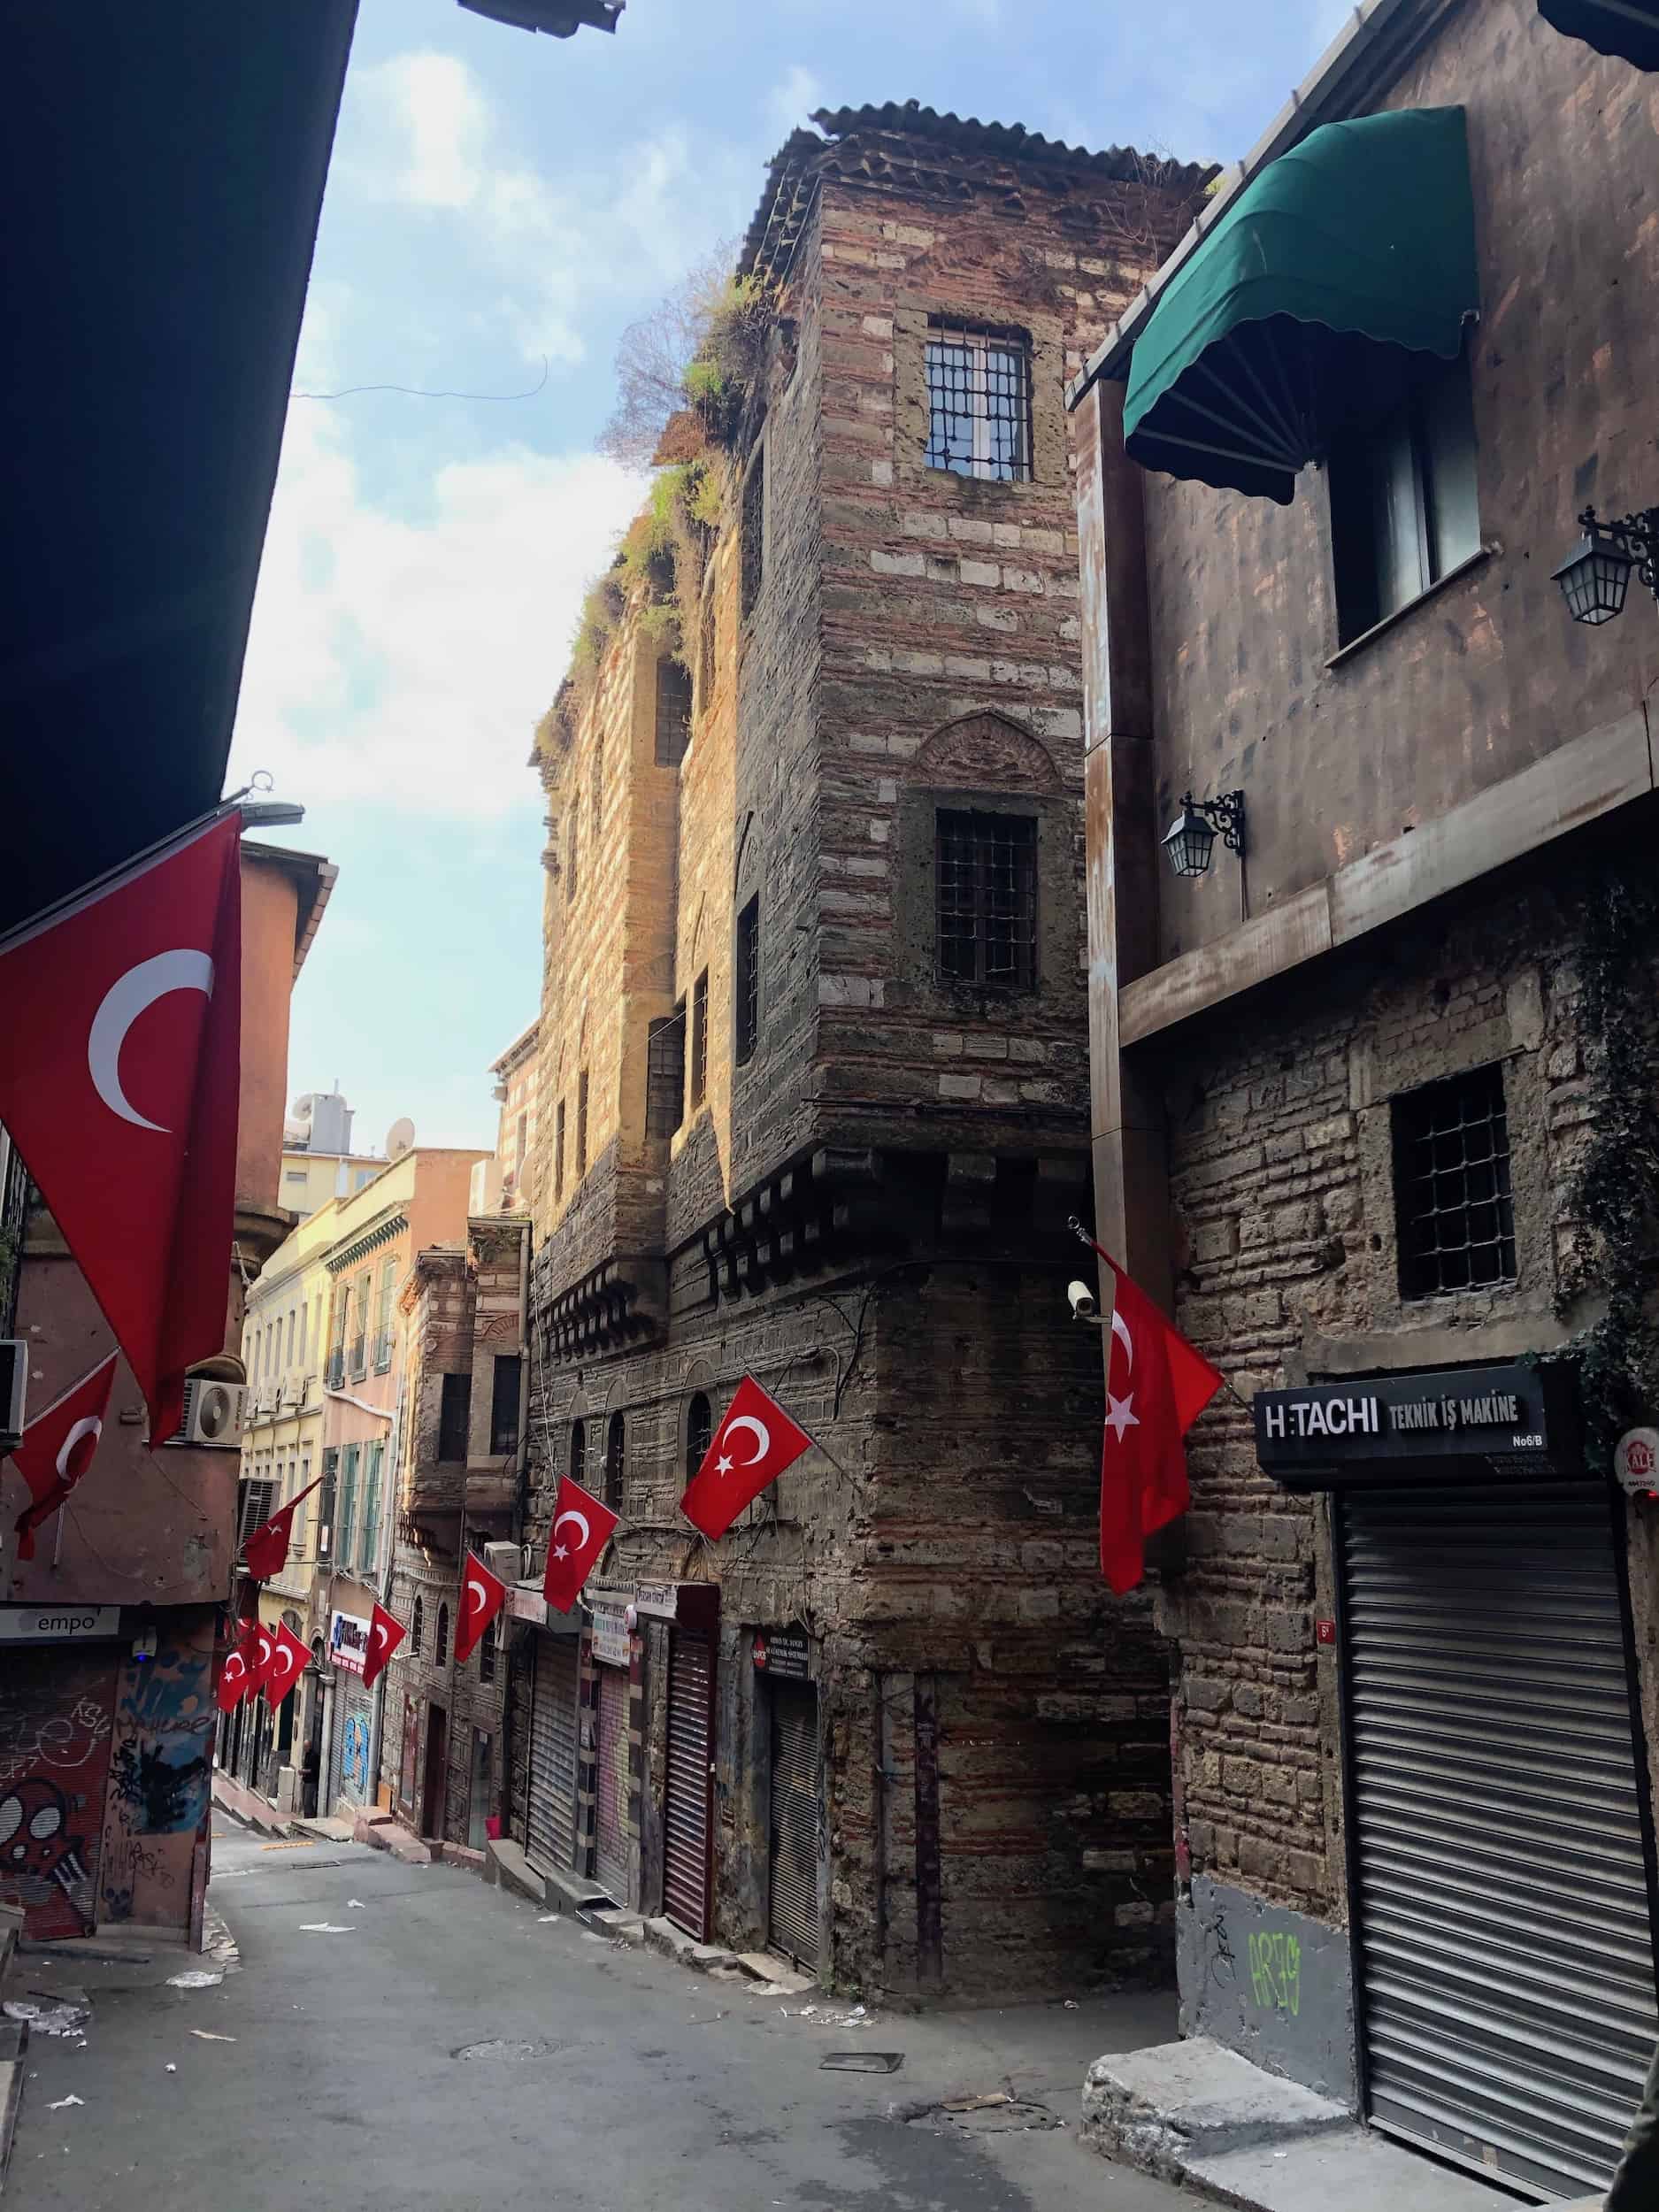 Genoese building in Karaköy, Istanbul, Turkey